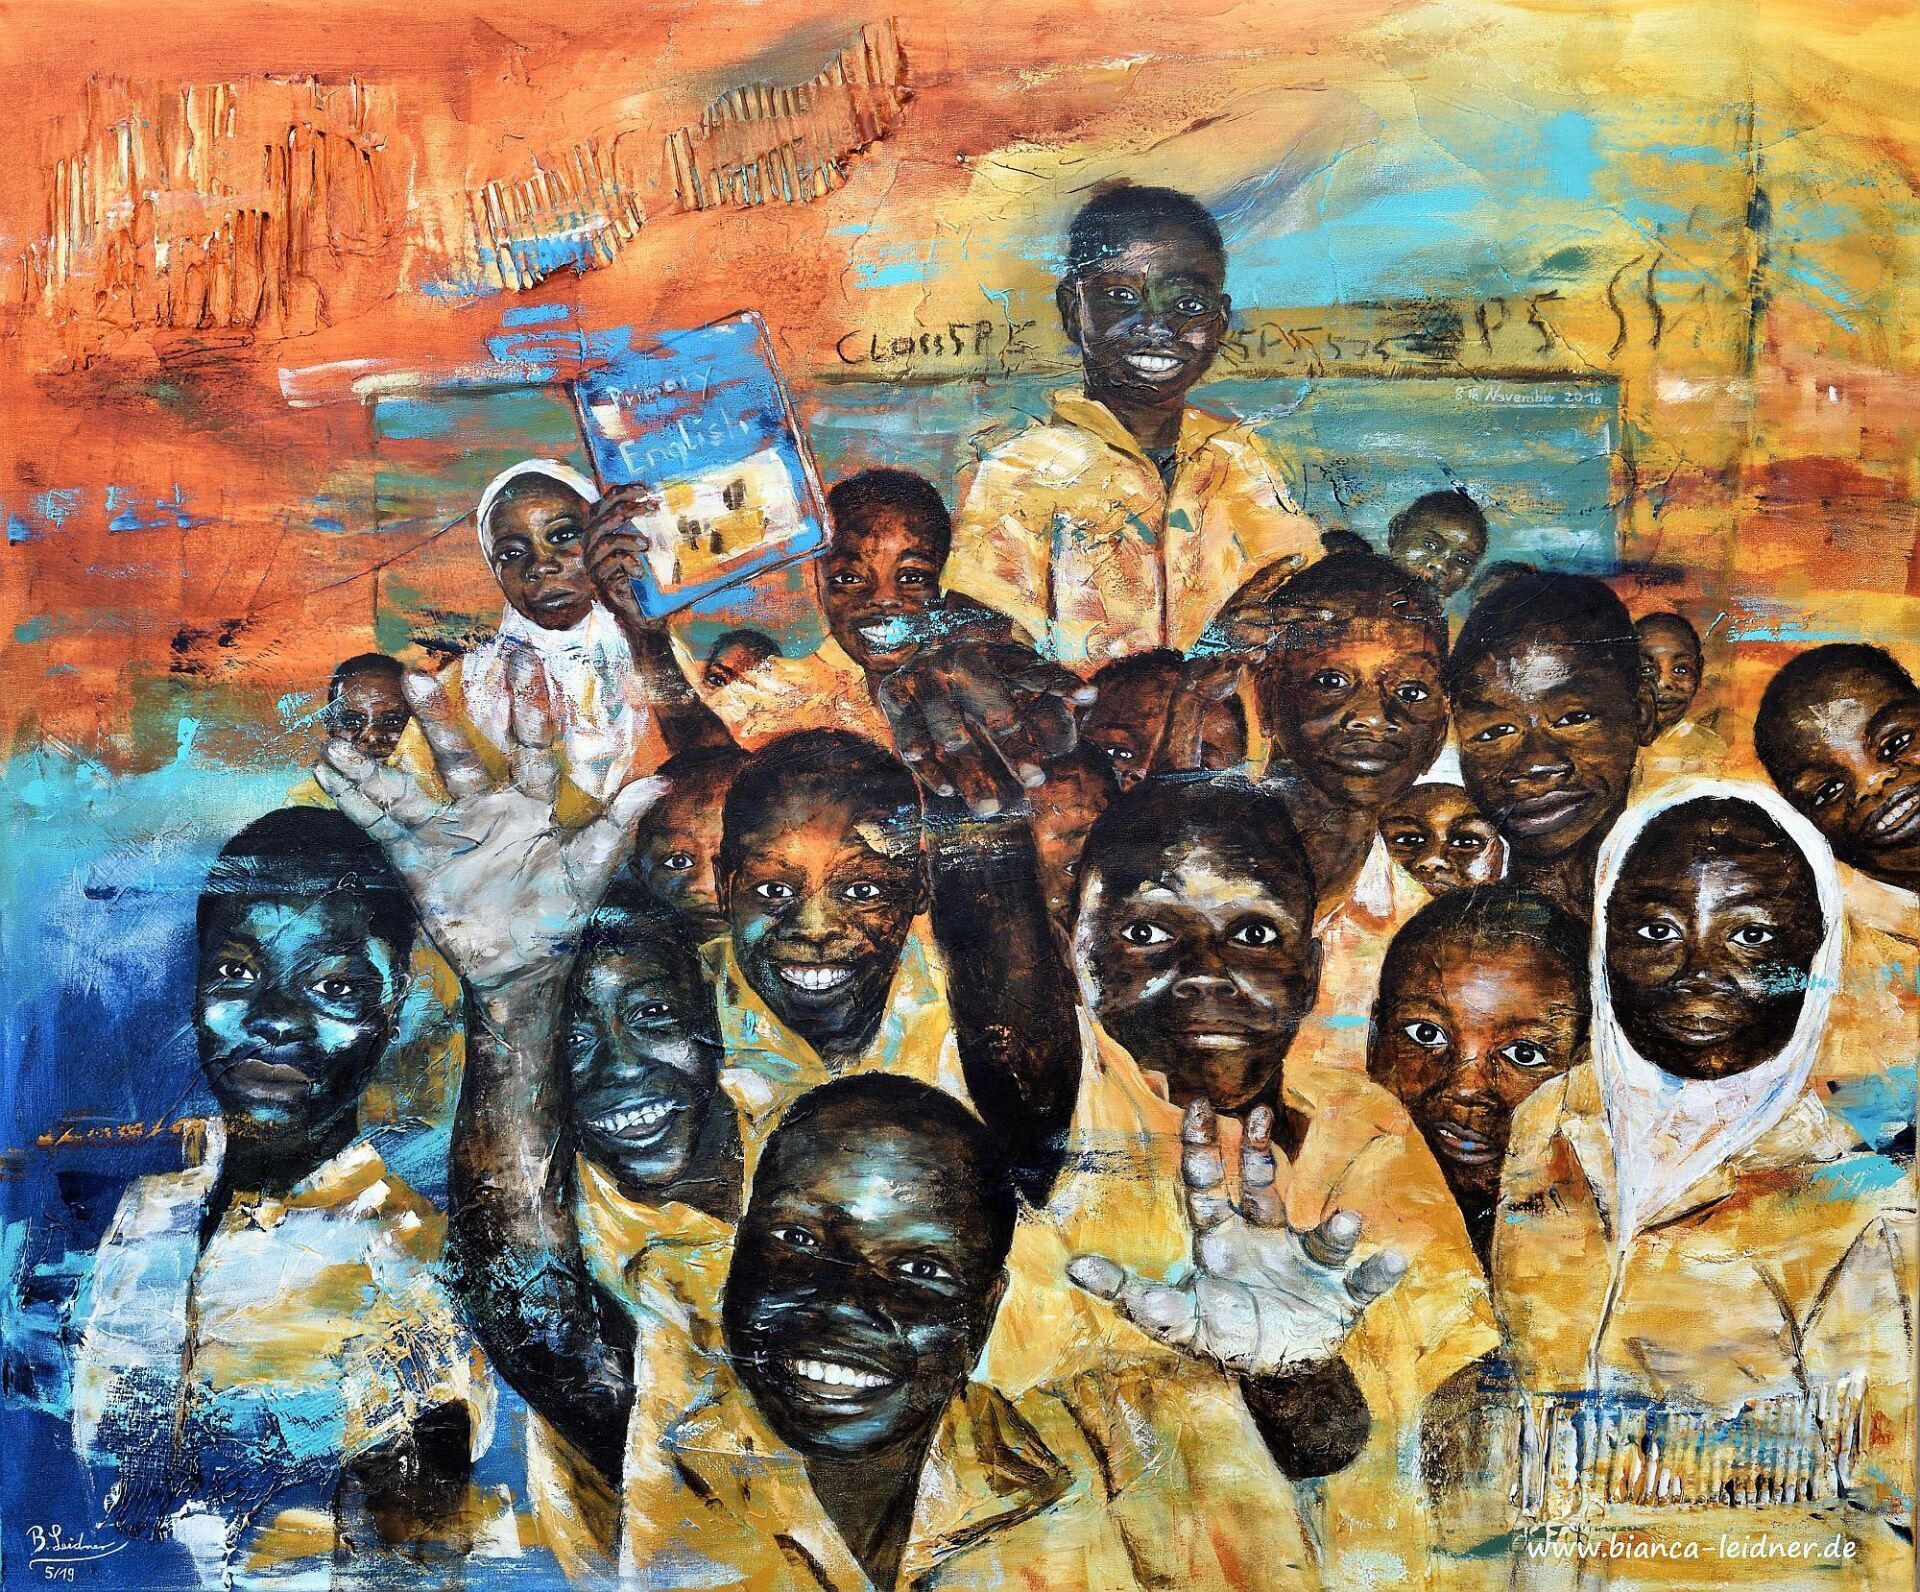 Acrylbild/Gemälde mit afrikanischen Schulkindern von Bianca Leidner in den Fraben ocker, orange, blau und braun